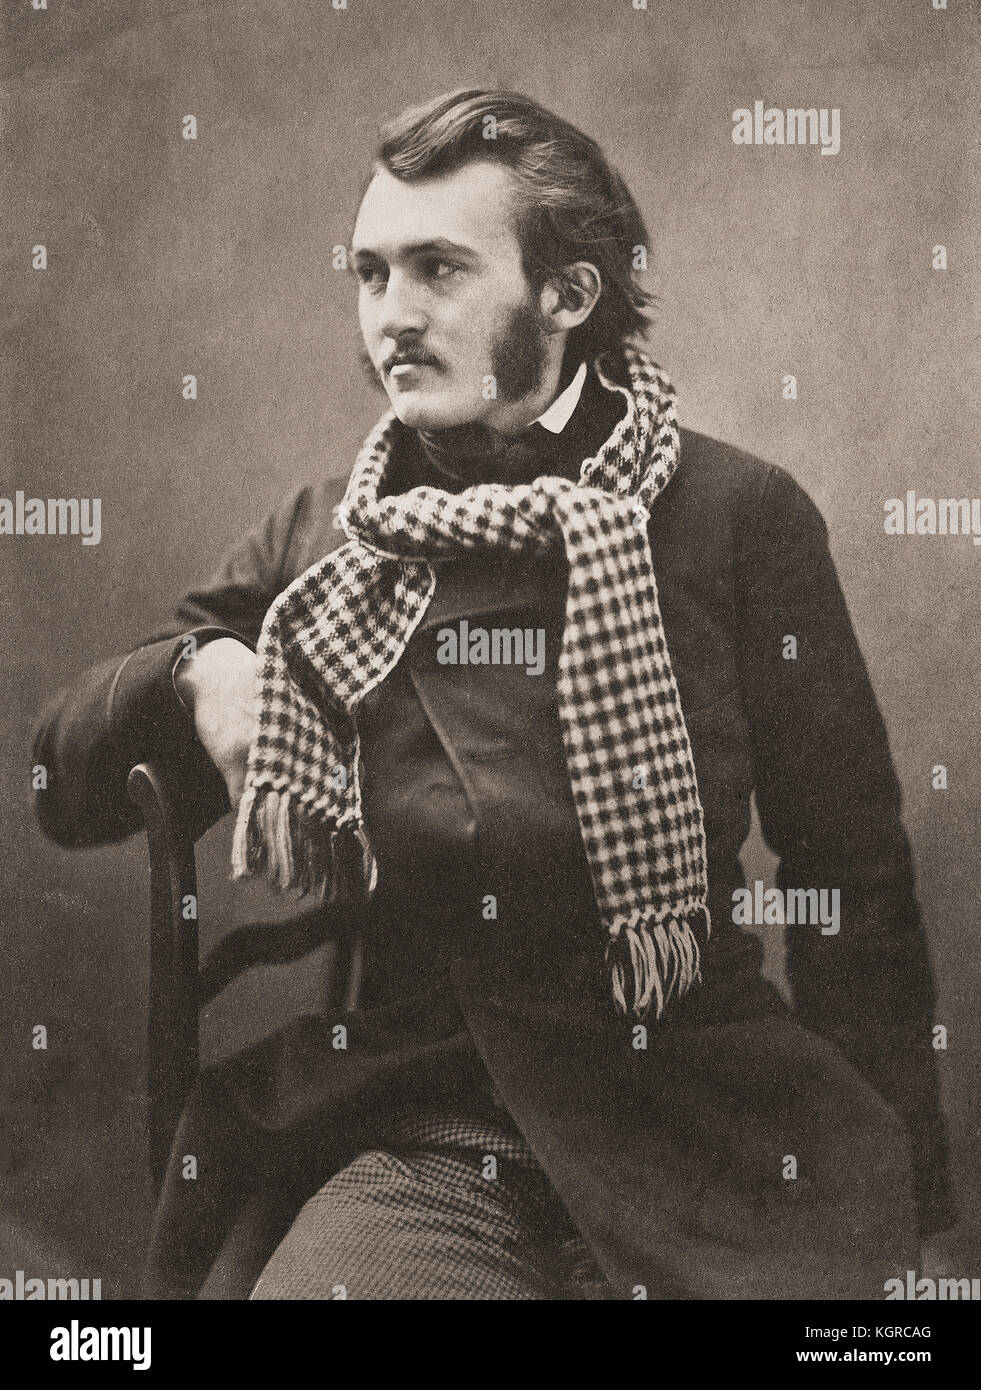 Porträt des französischen Künstlers Paul Gustave Louis Christophe Doré, 1832-1883, aufgenommen um 1855 vom französischen Fotografen Gaspard-Félix Tournachon, 1820-1910, besser bekannt unter seinem Pseudonym Nadar. Stockfoto